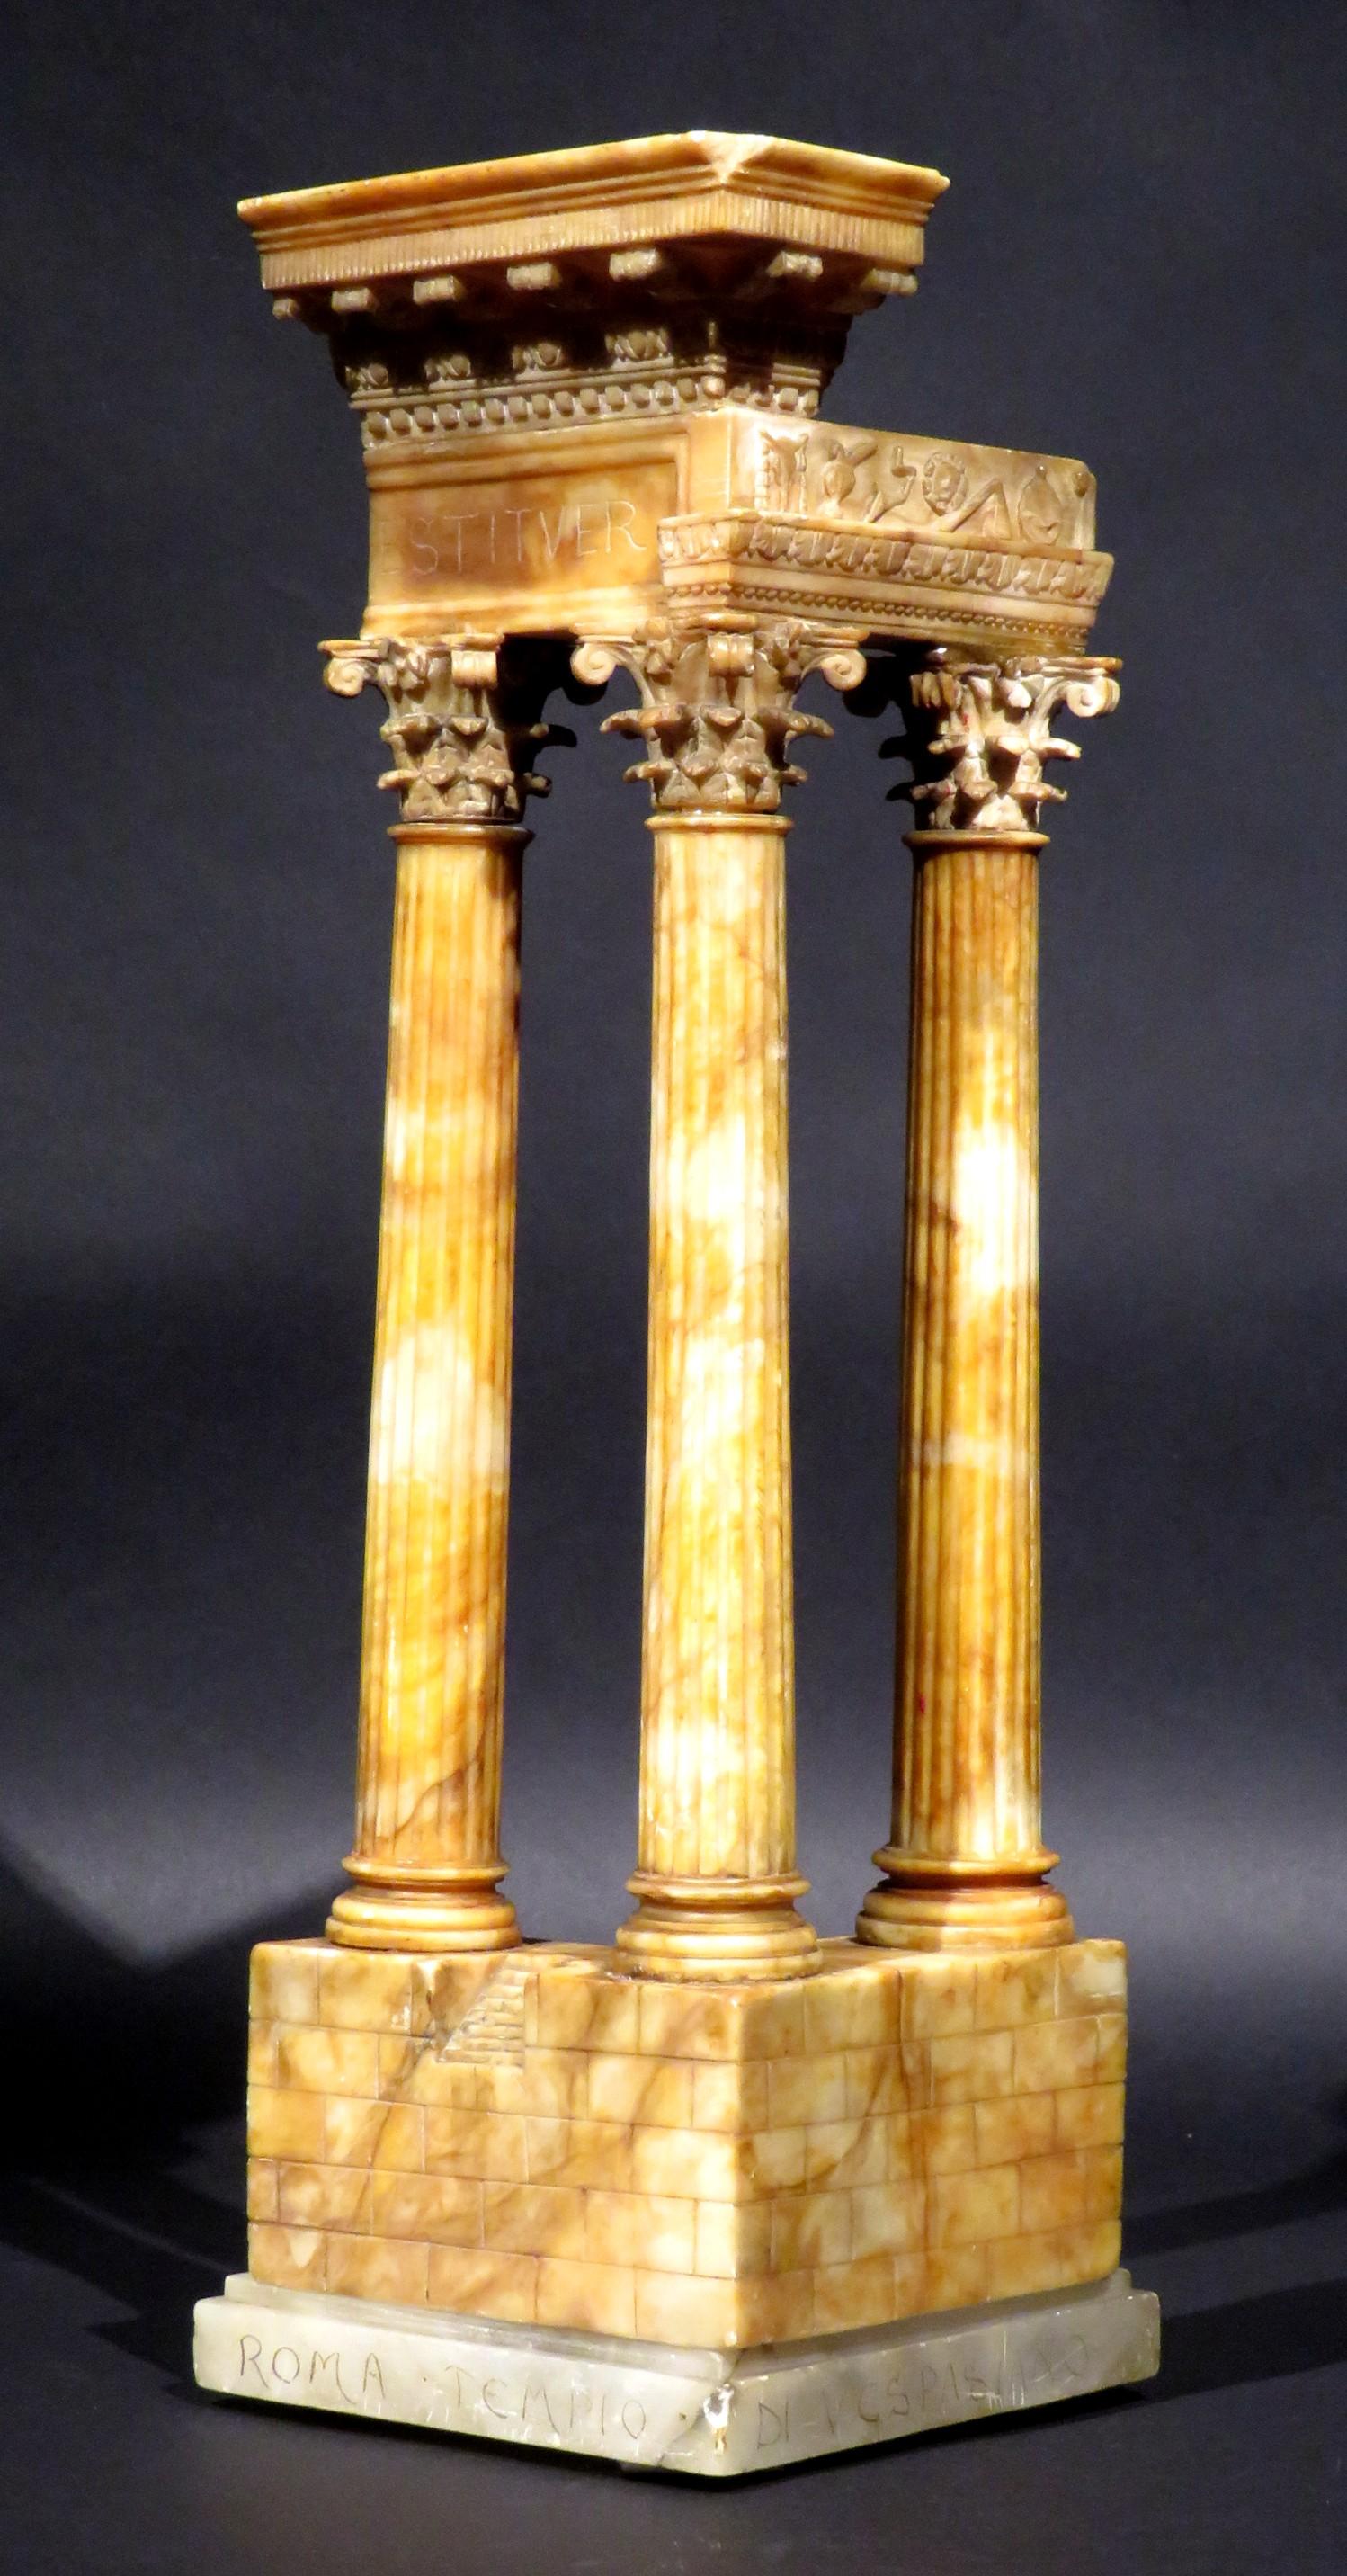 La grande structure d'albâtre finement sculptée présente un trio de colonnes cannelées terminées par des chapiteaux corinthiens finement sculptés, soutenant un entablement avec une frise sculptée illustrant des symboles relatifs à la Collegia